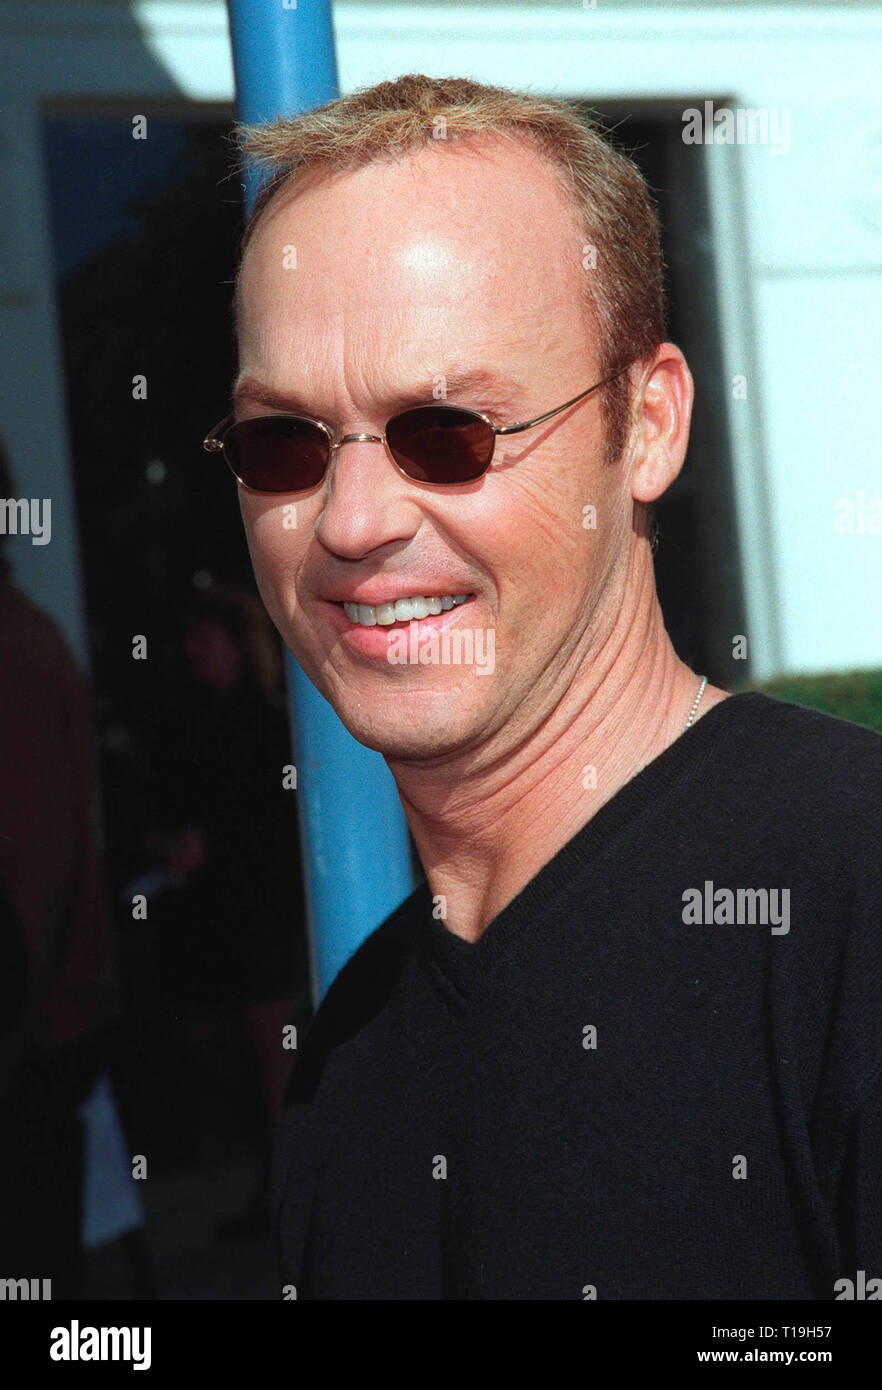 LOS ANGELES, Ca - Dezember 5, 1998: Schauspieler Michael Keaton bei der Premiere in Los Angeles seines neuen Films "Jack Frost", in dem er Sterne mit Kelly Preston. Stockfoto